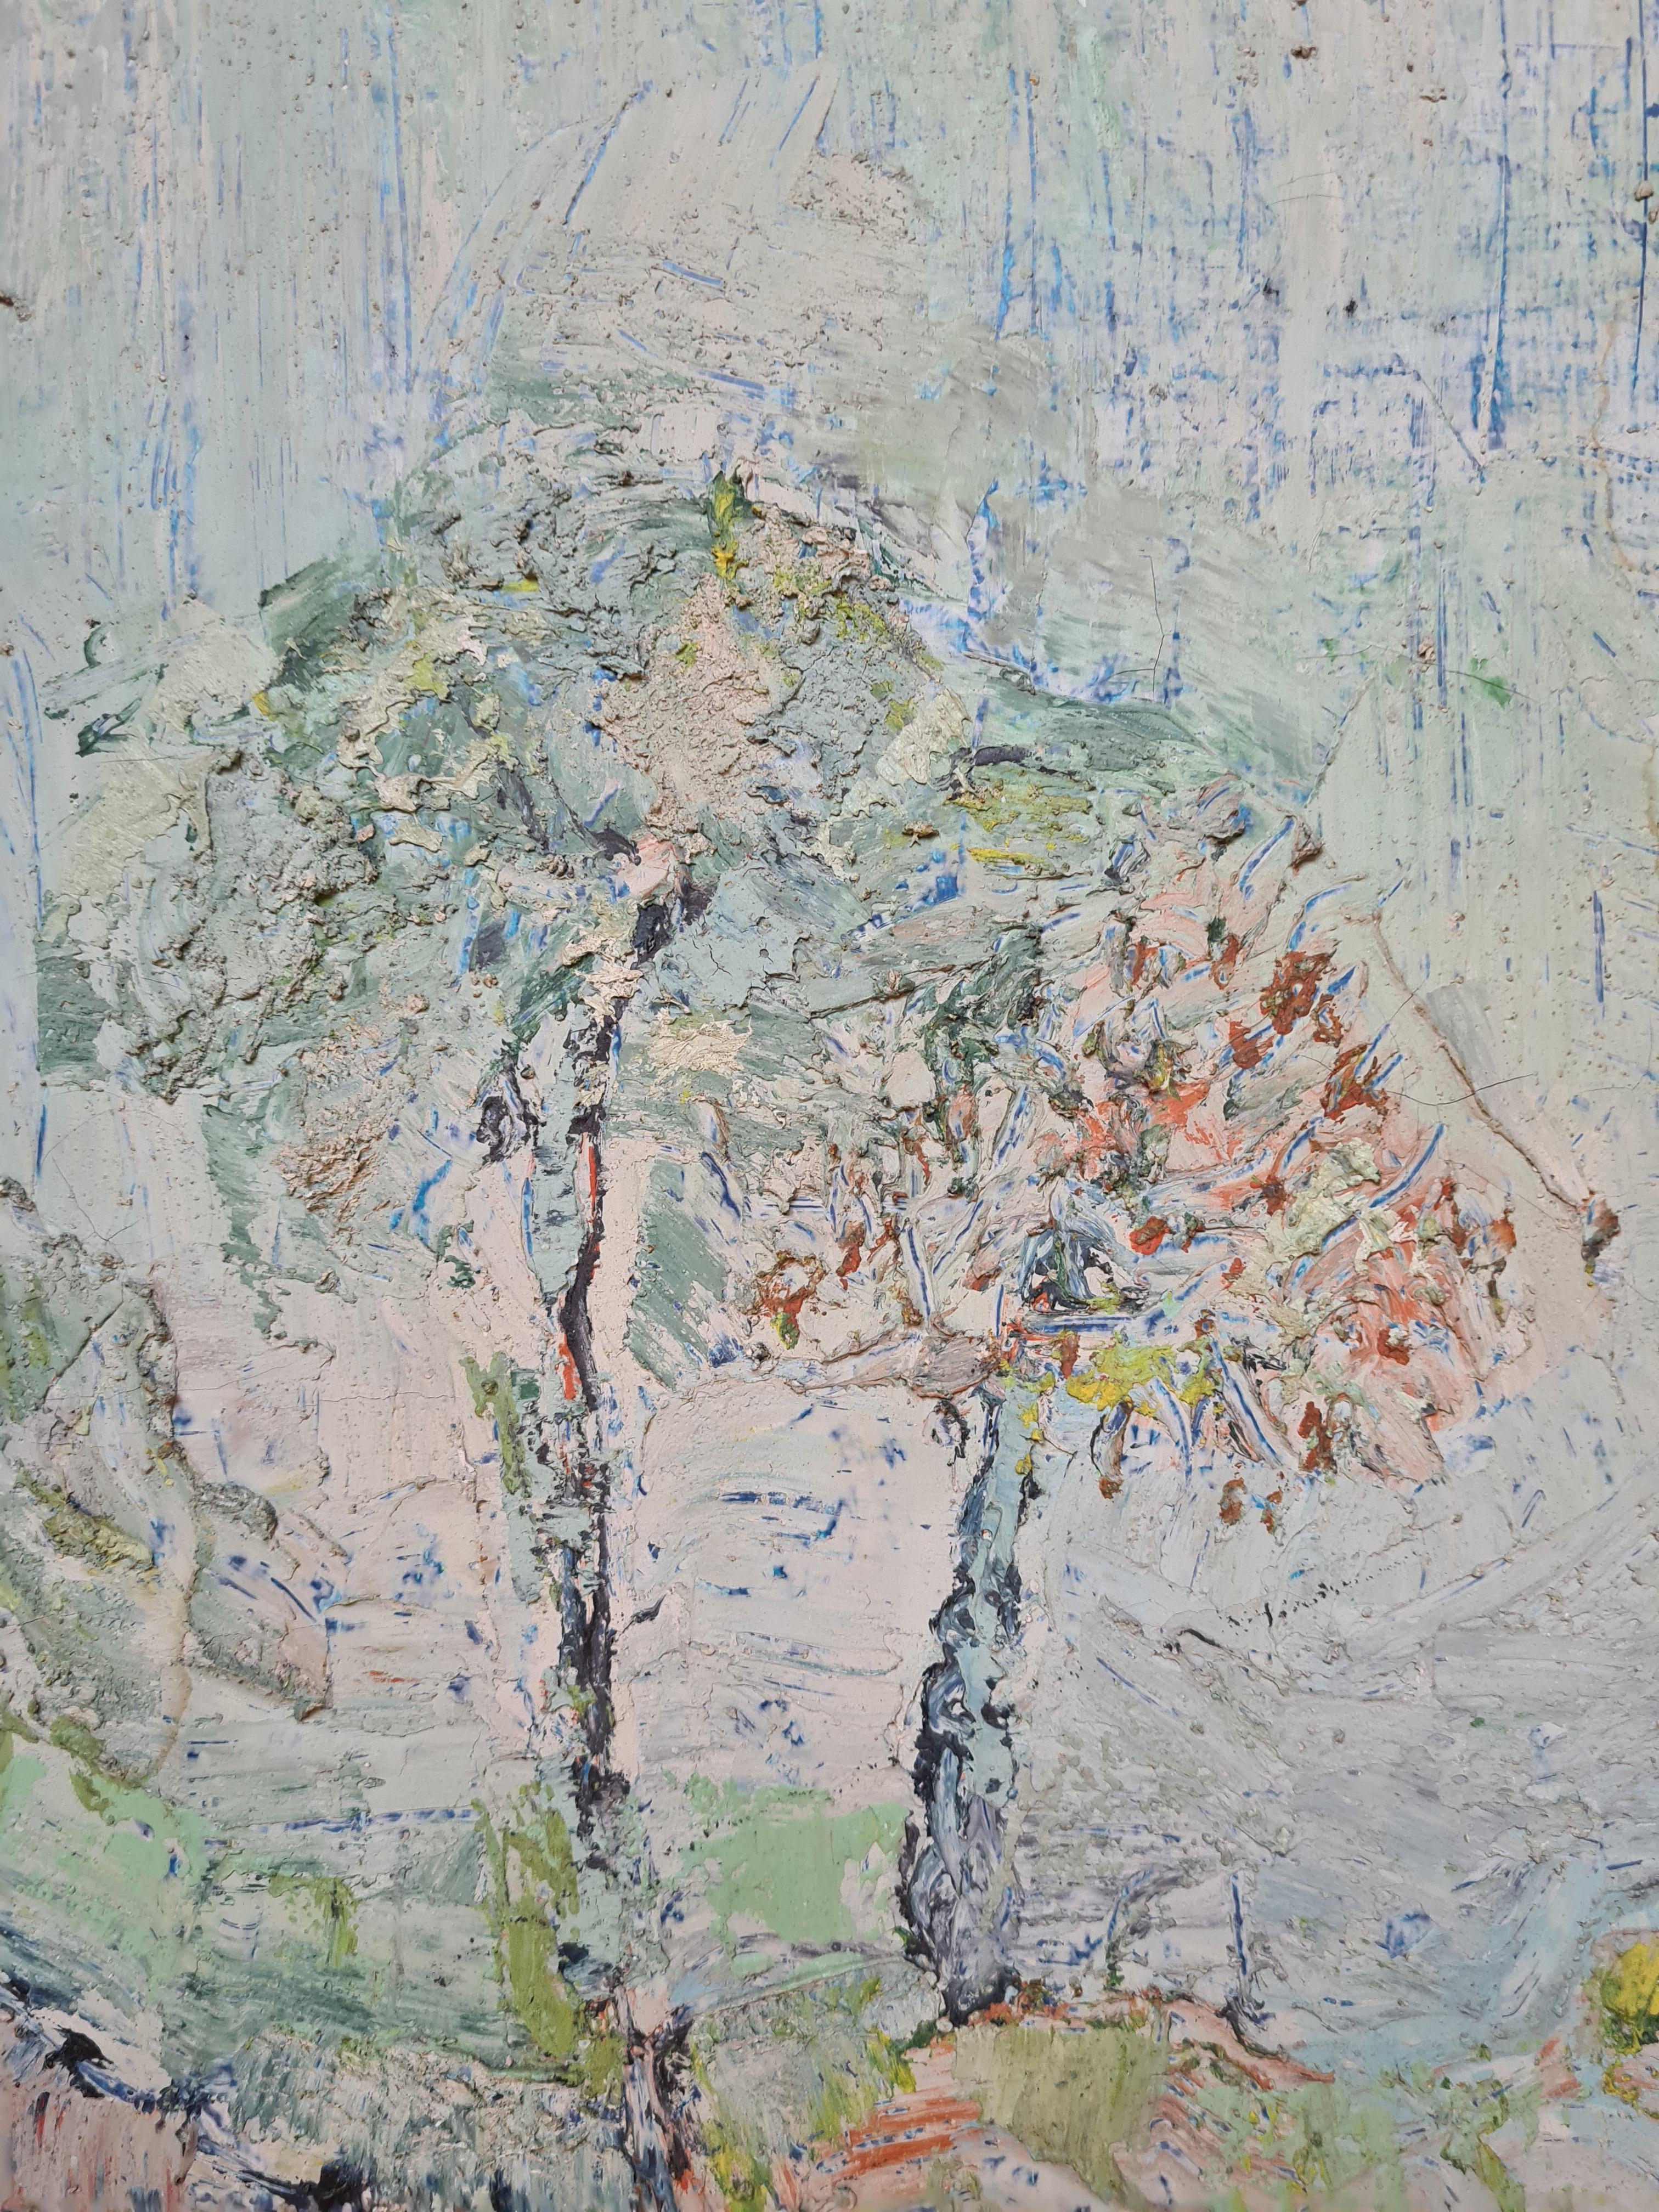 Mitte des 20. Jahrhunderts Französisch Expressionist Öl auf Leinwand von einer Frühlingslandschaft von Jacques Pinon. Das Gemälde ist unten rechts signiert und hat ein Label auf der Rückseite der Leinwand.

Pinon war nicht nur als Maler bekannt,